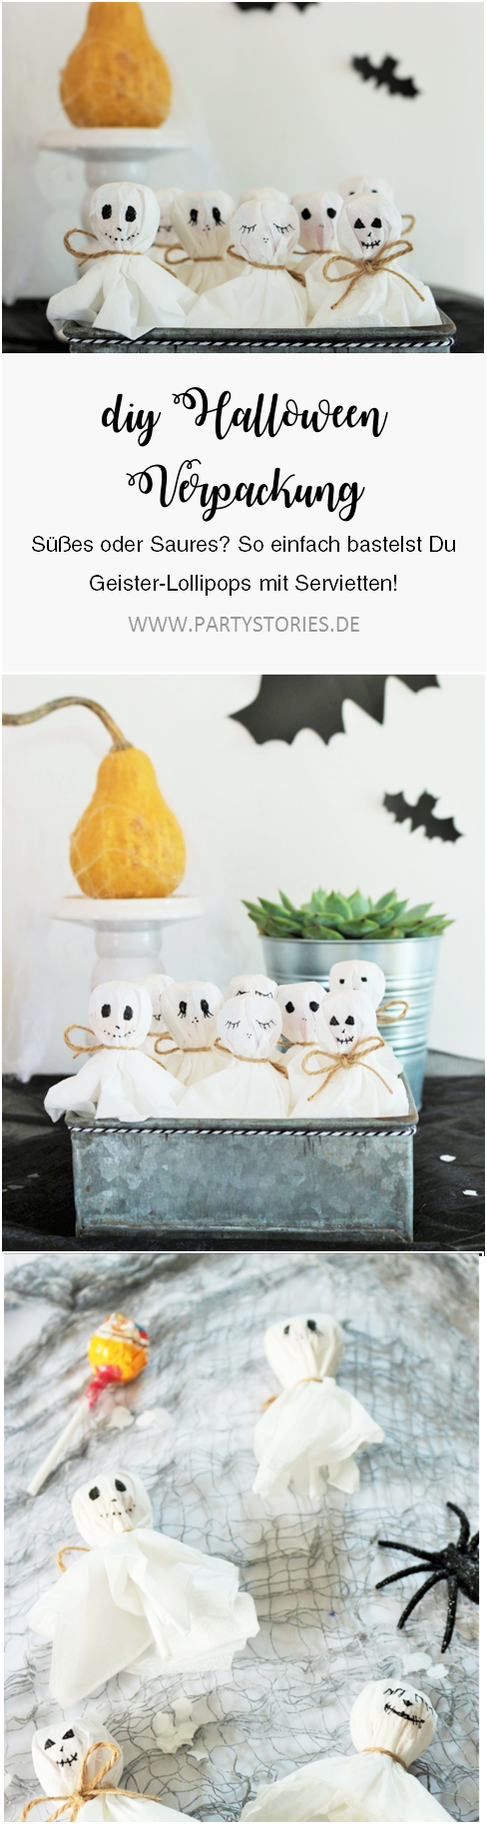 Bild: Eine schnelle last-minute Idee, um Halloween Süßigkeiten zu verpacken: Als Geister-Lutscher samt Servietten, gefunden auf www.partystories.de